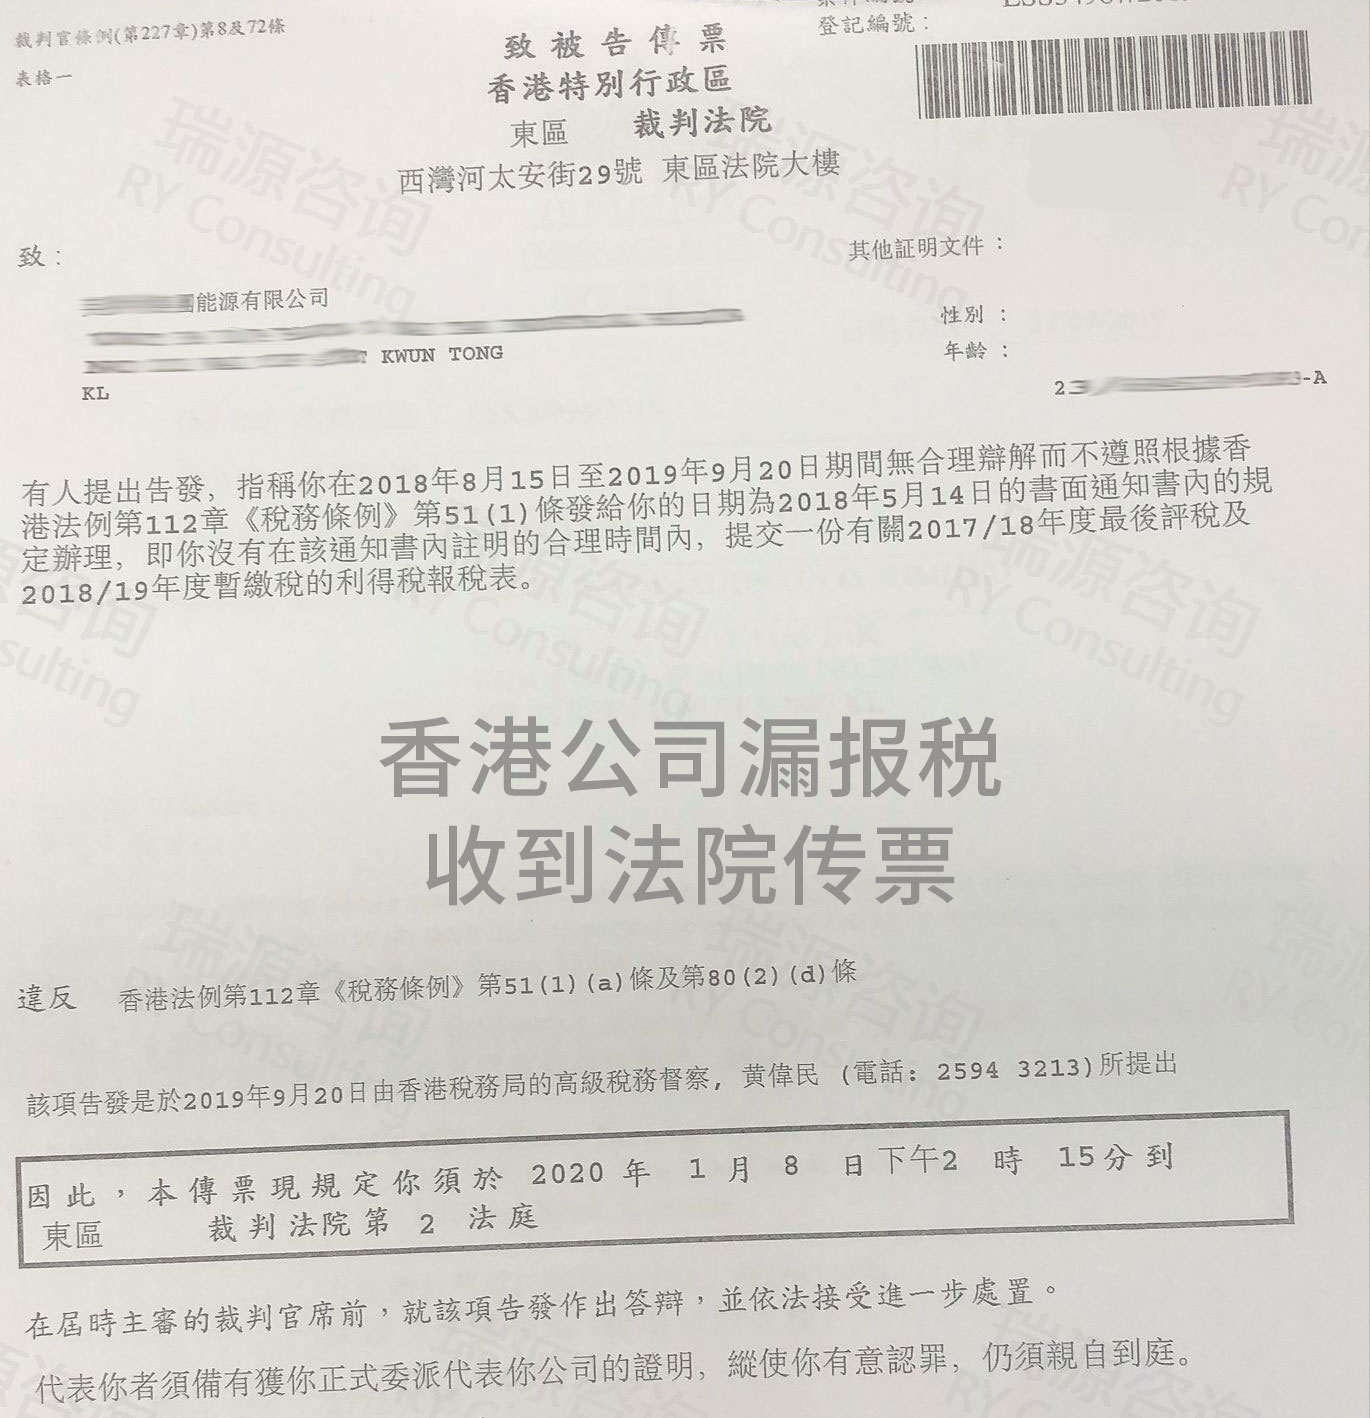 香港公司被政府起诉！可靠的服务保障客户权益。详情>>>